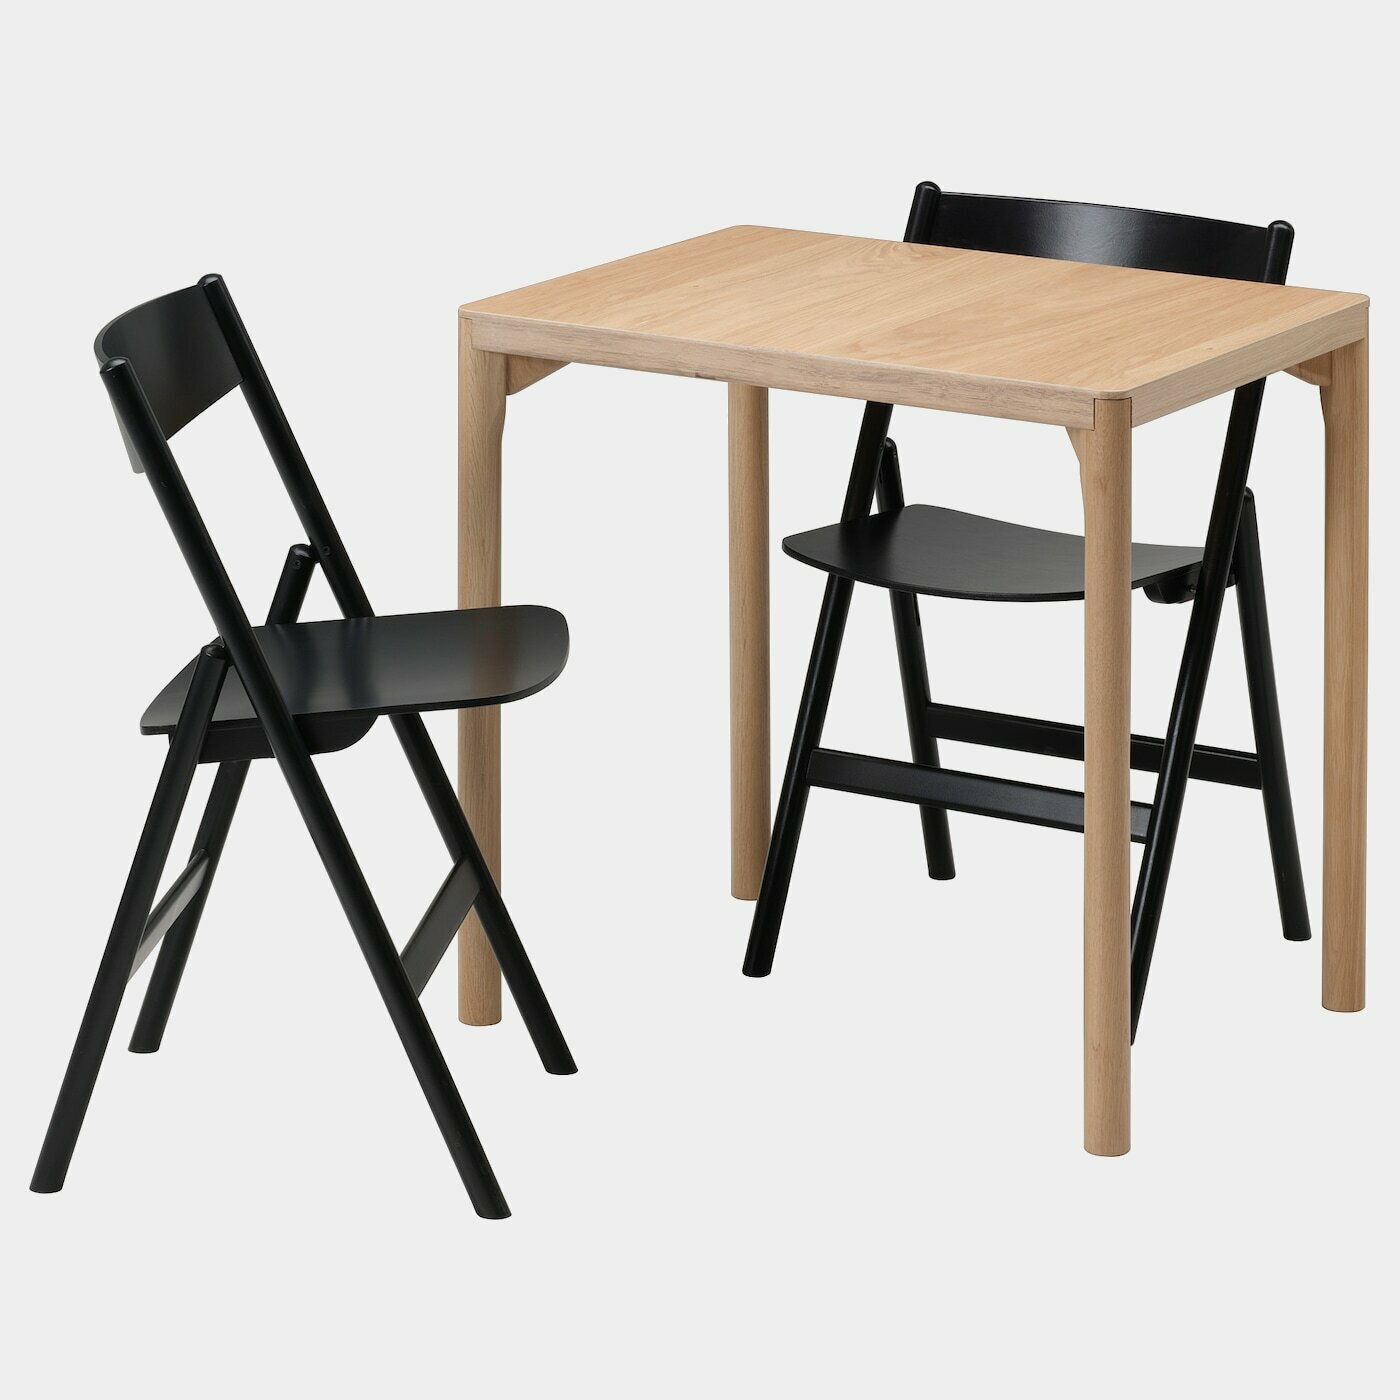 RÅVAROR / RÅVAROR Tisch und 2 Klappstühle  -  - Möbel Ideen für dein Zuhause von Home Trends. Möbel Trends von Social Media Influencer für dein Skandi Zuhause.